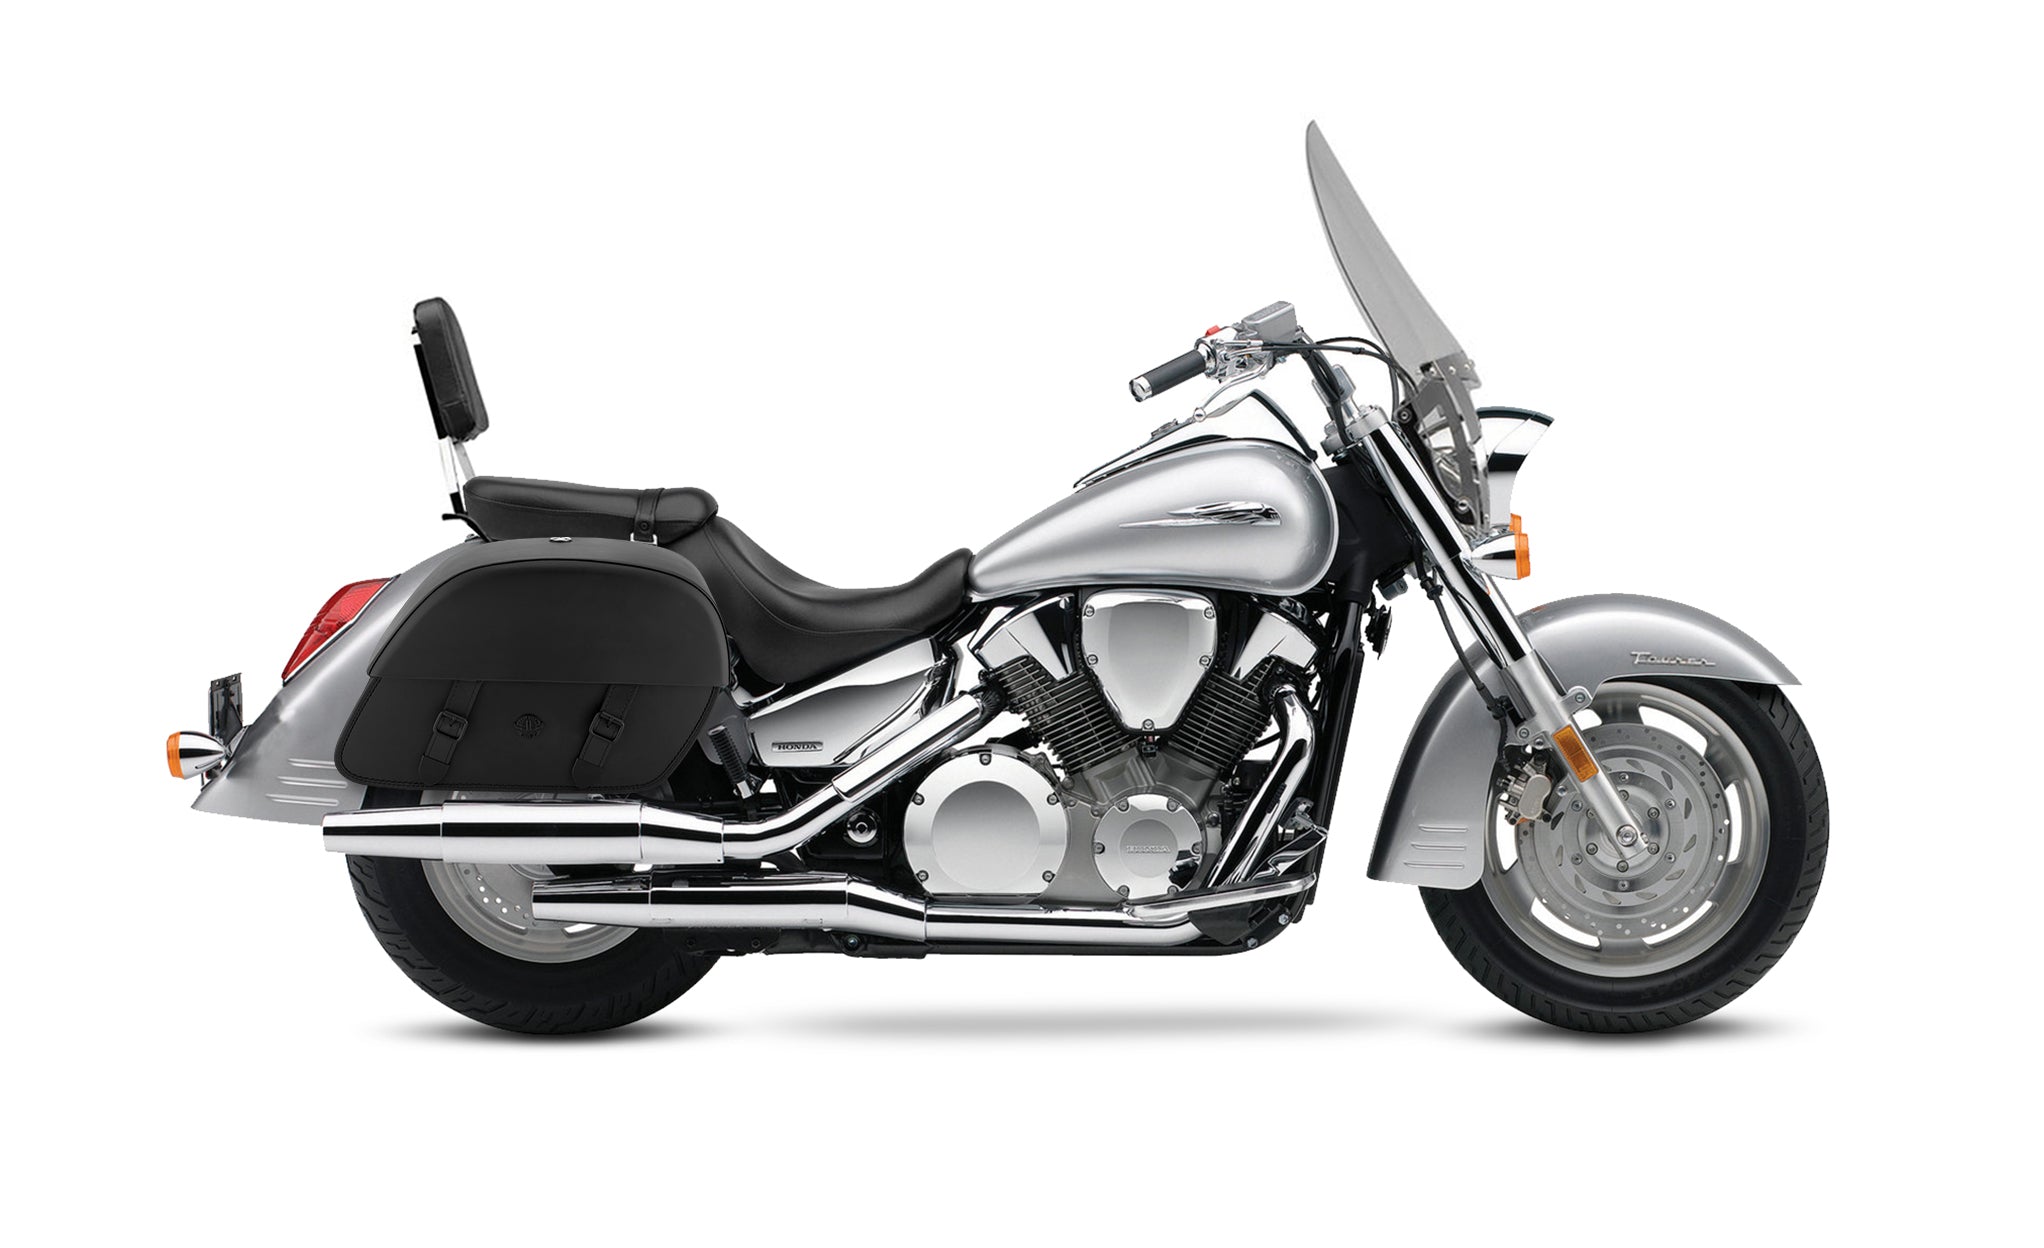 Viking Baelor Large Honda Vtx 1300 T Tourer Leather Motorcycle Saddlebags on Bike Photo @expand